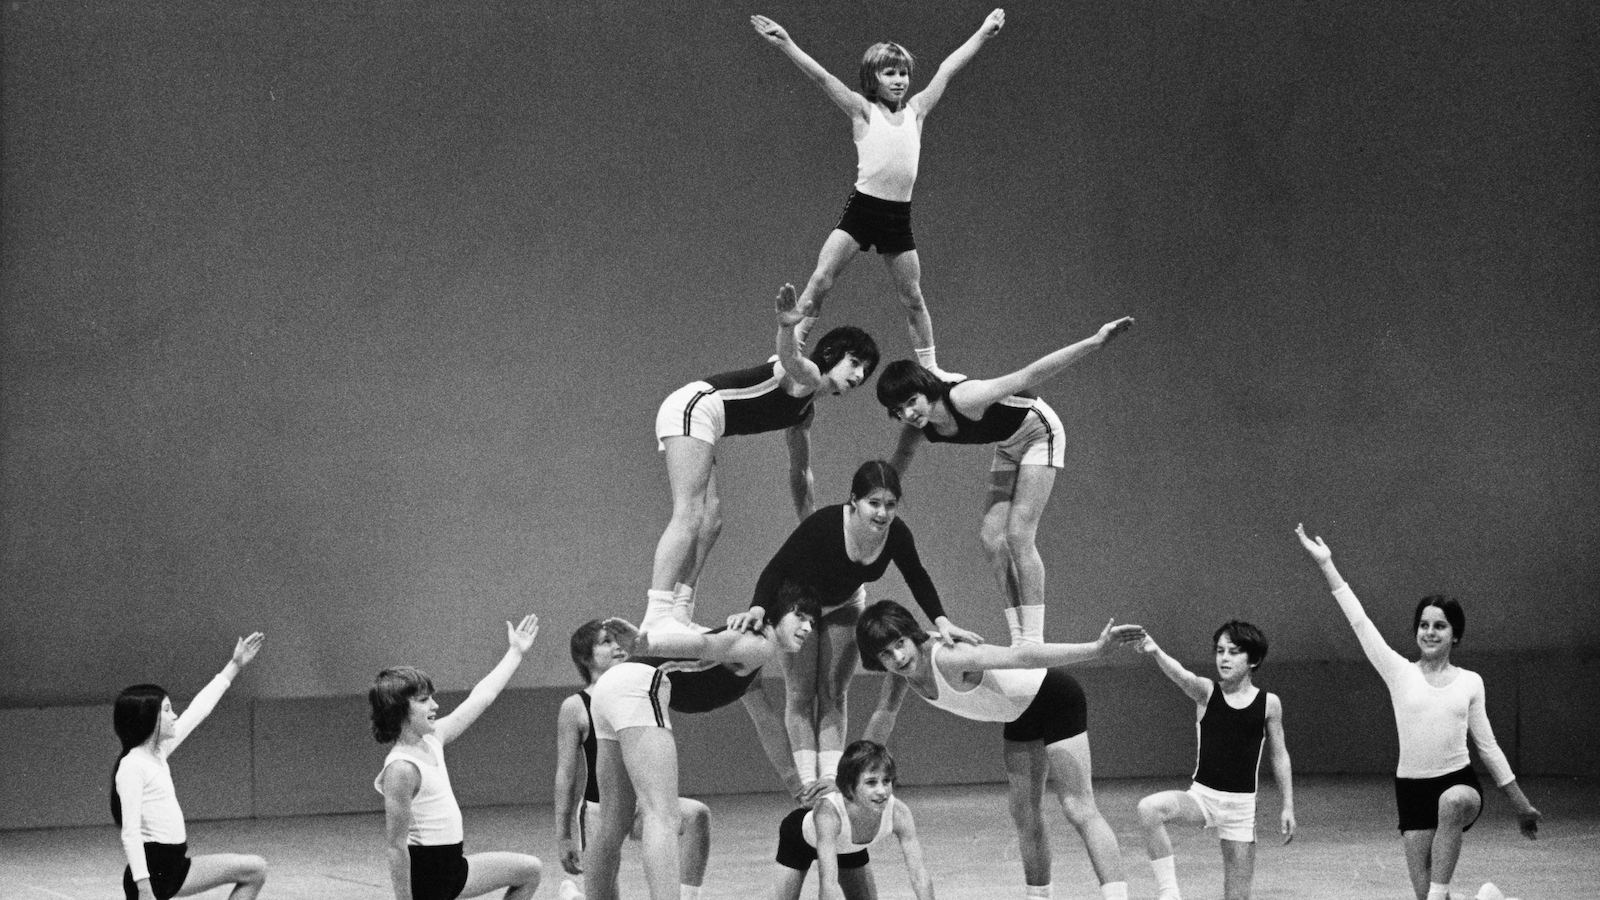 De jeunes gymnastes font une pyramide humaine.